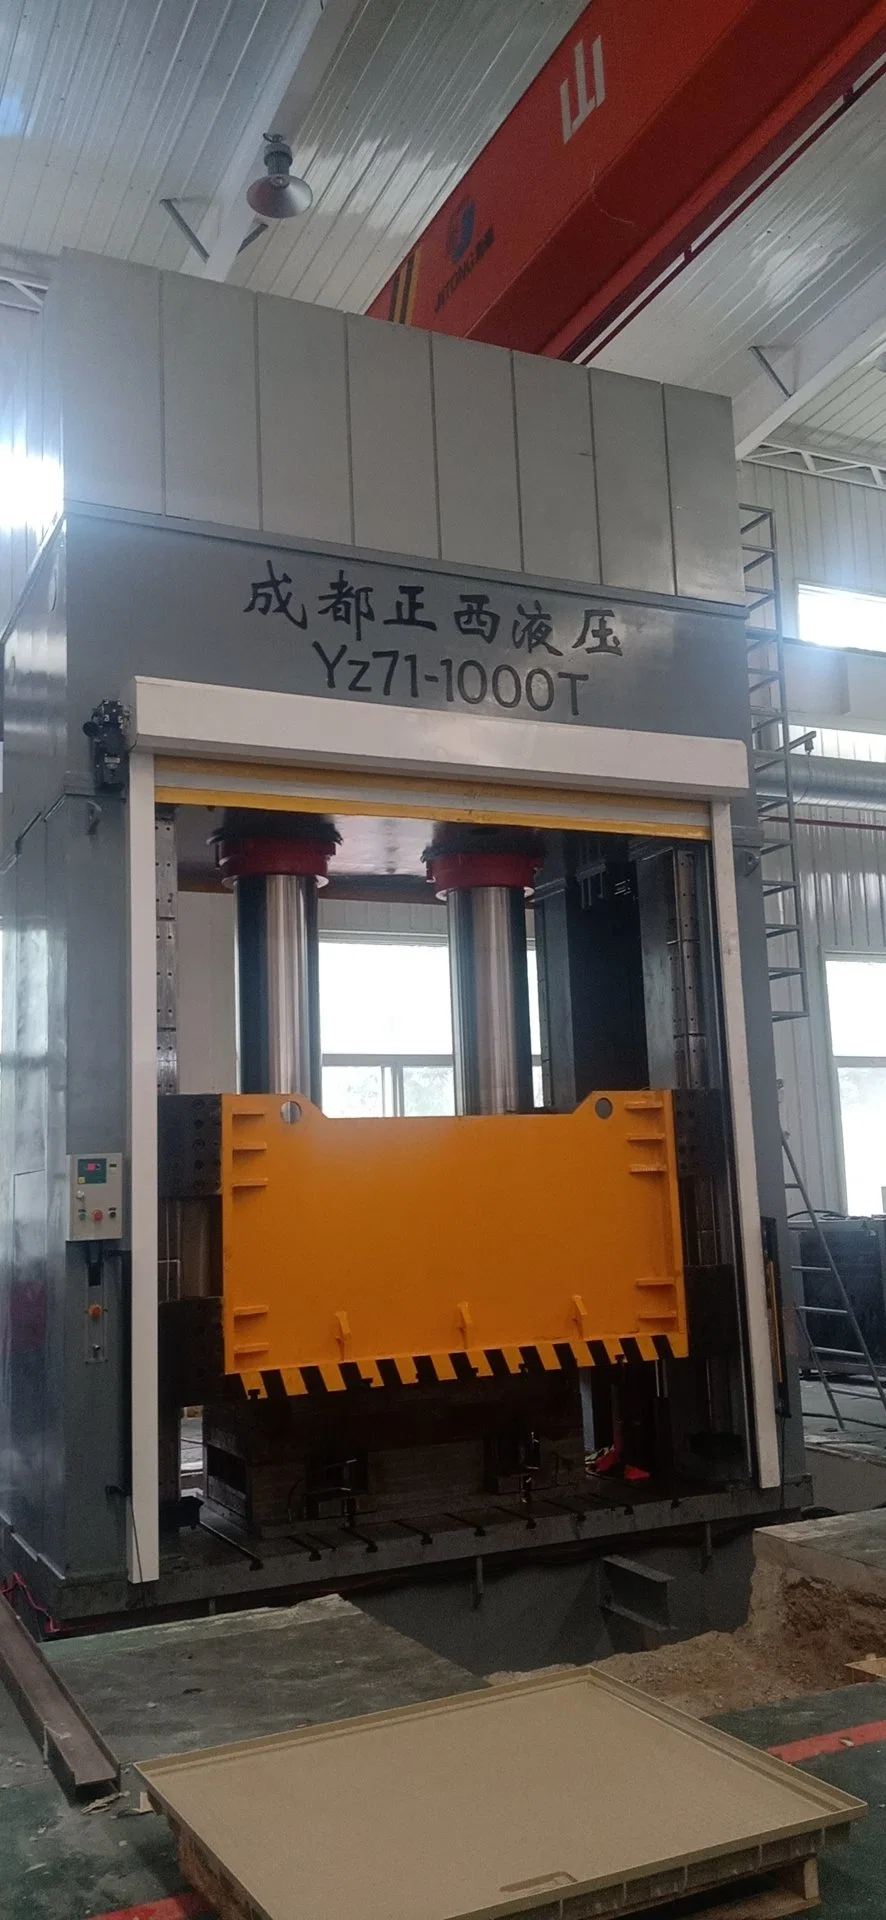 ماكينة ضغط الحرارة الهيدروليكية من زينغشي لخزان مياه SMC اللوحات